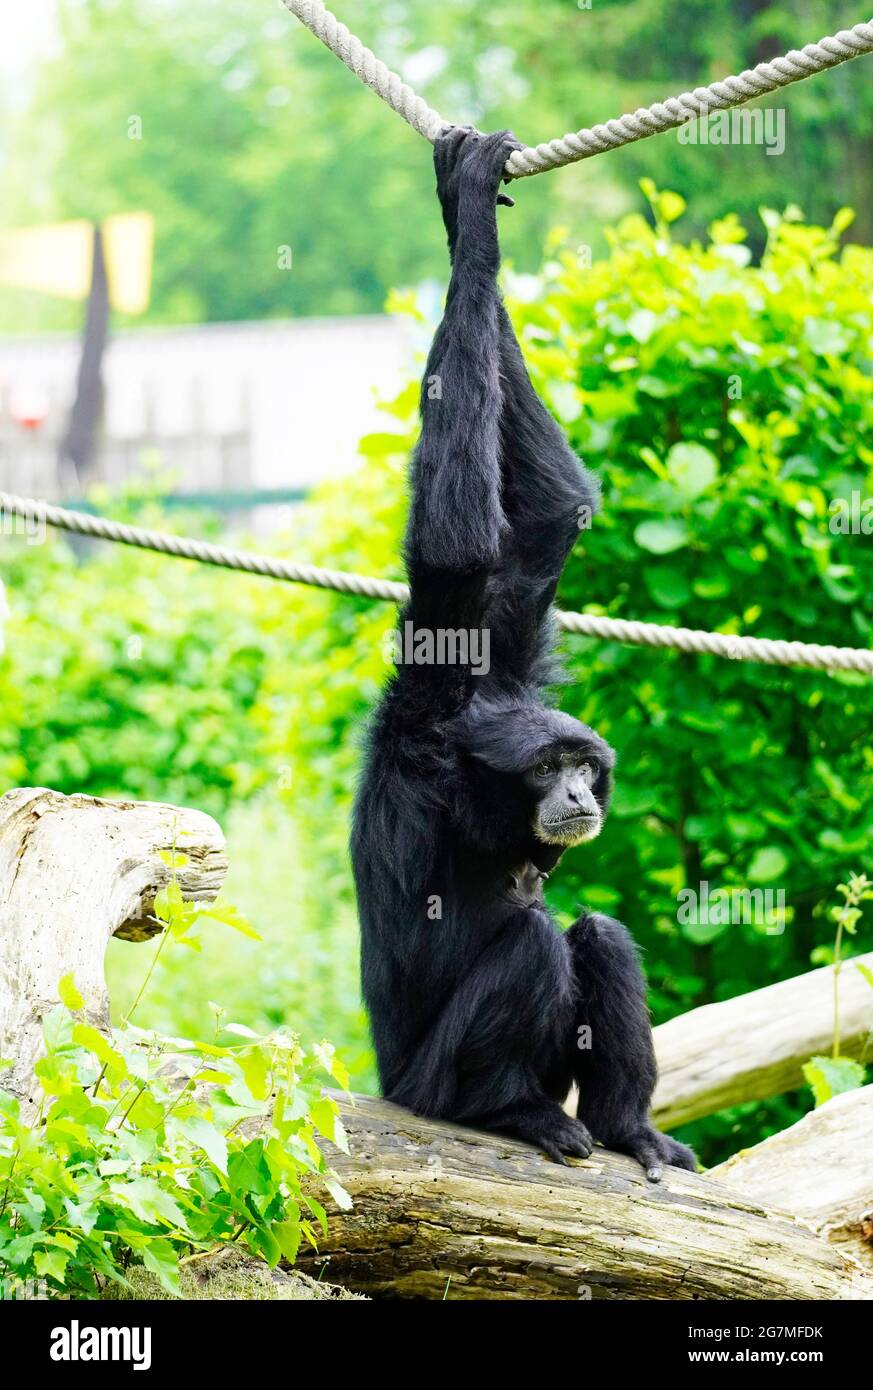 Siamang (Symphonangus syndactylus), der an einem Seil hängt. Primatenart aus der Gibbon-Familie (Hylobatidae). Affe mit schwarzem Fell. Stockfoto